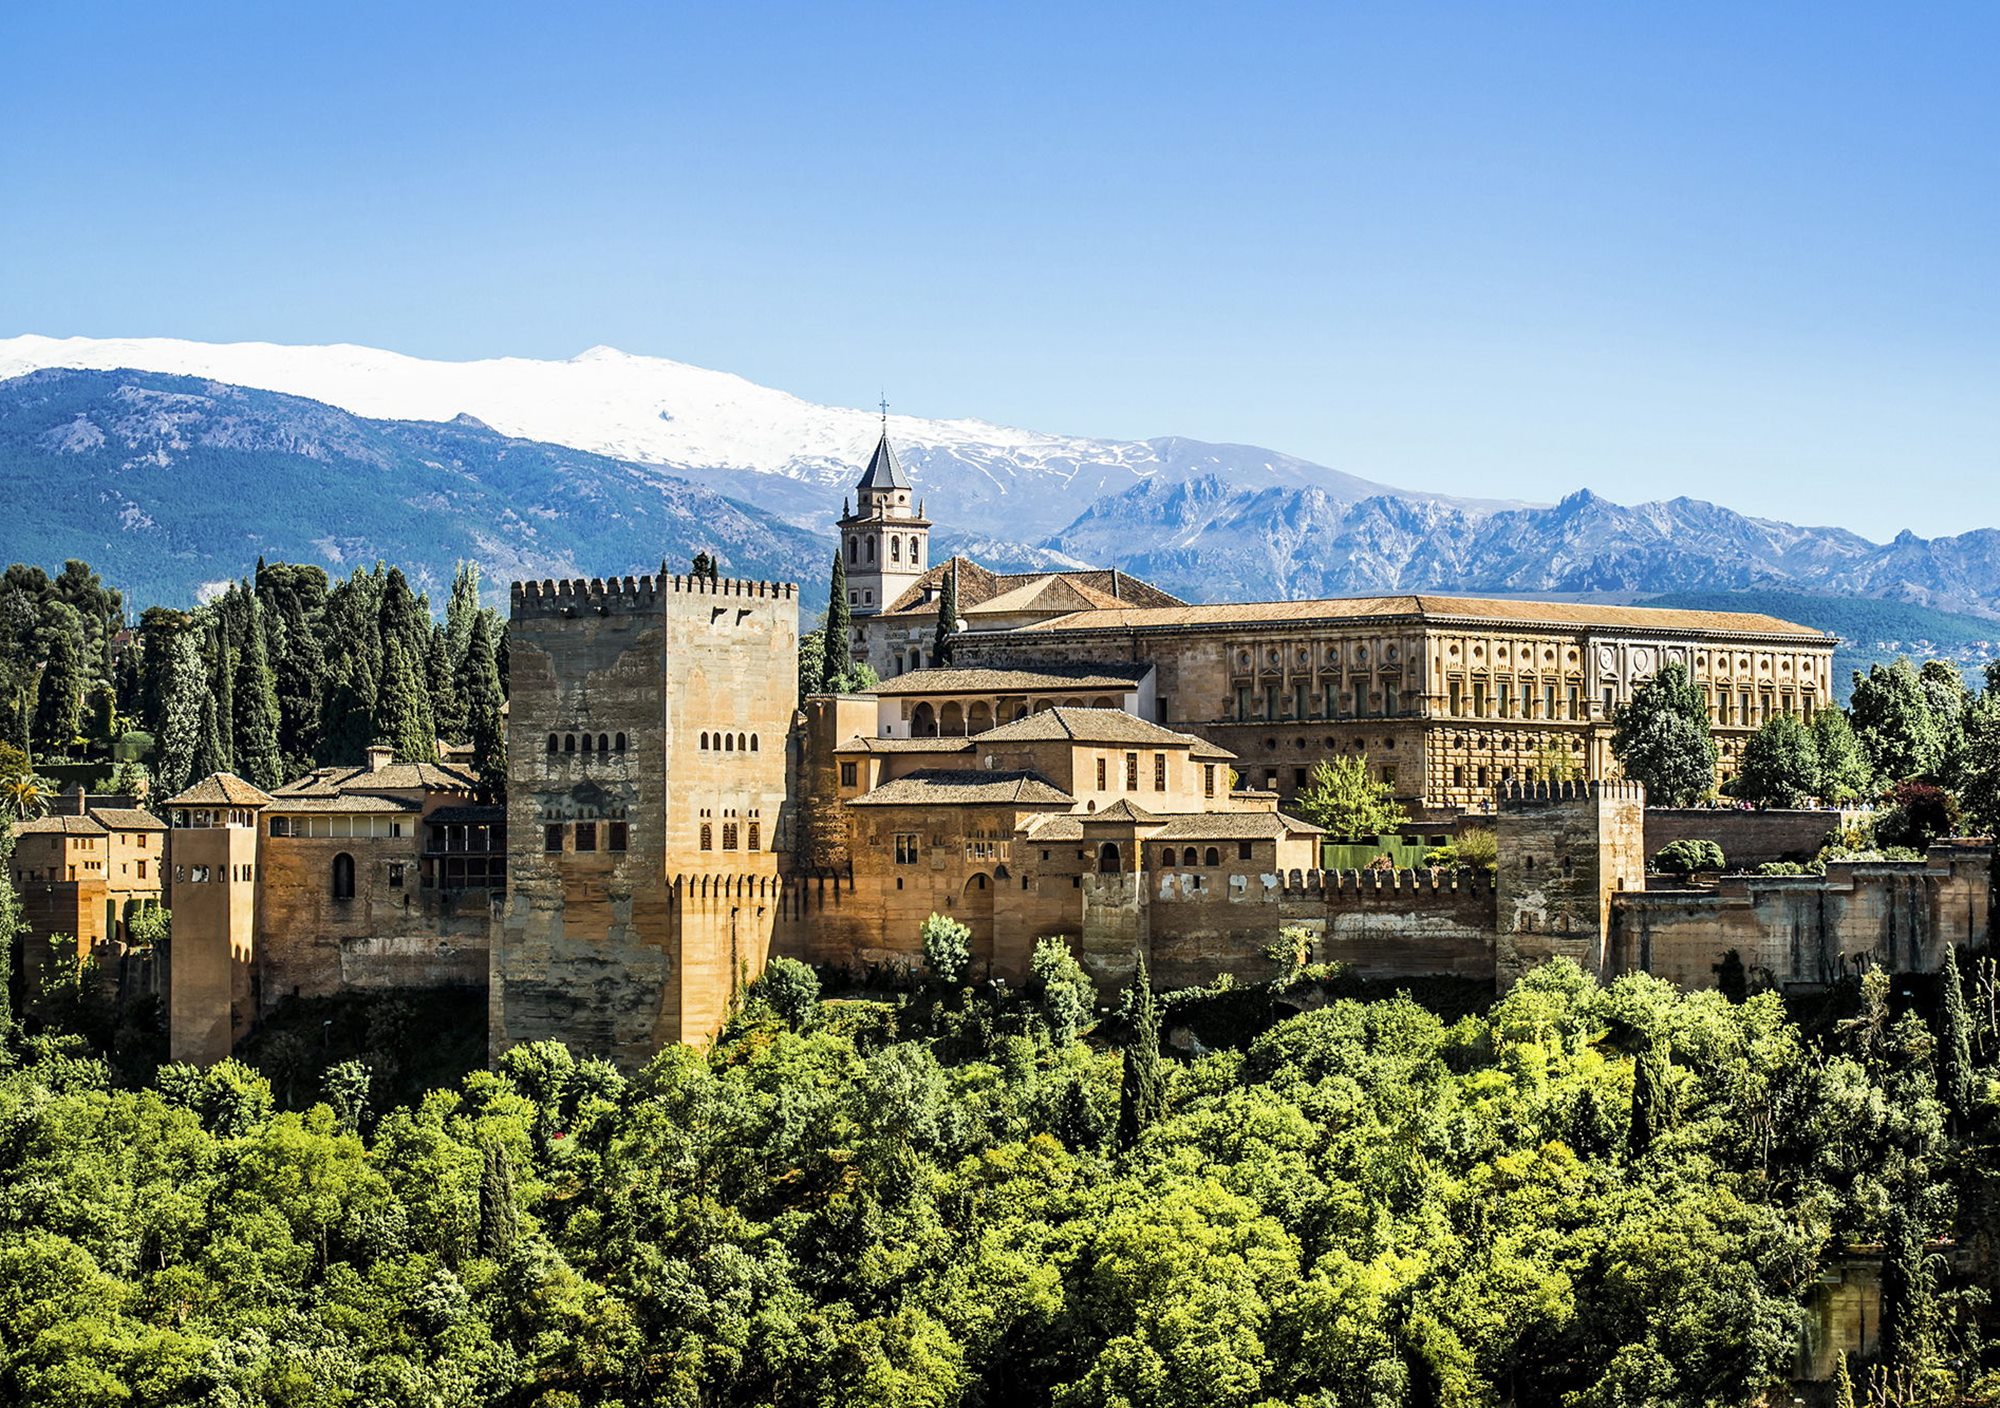 Visitas Alhambra Granada desde Costa del Sol, visitas Alhambra desde Málaga, visitas Alhambra desde Torremolinos, visitas Alhambra desde Benalmádena, visitas Alhambra desde Marbella, visitas Alhambra desde Fuengirola, visitas Alhambra desde Mijas, visitas Alhambra desde Elviria, visitas Alhambra desde Puerto Banús, visitas Alhambra desde Estepona